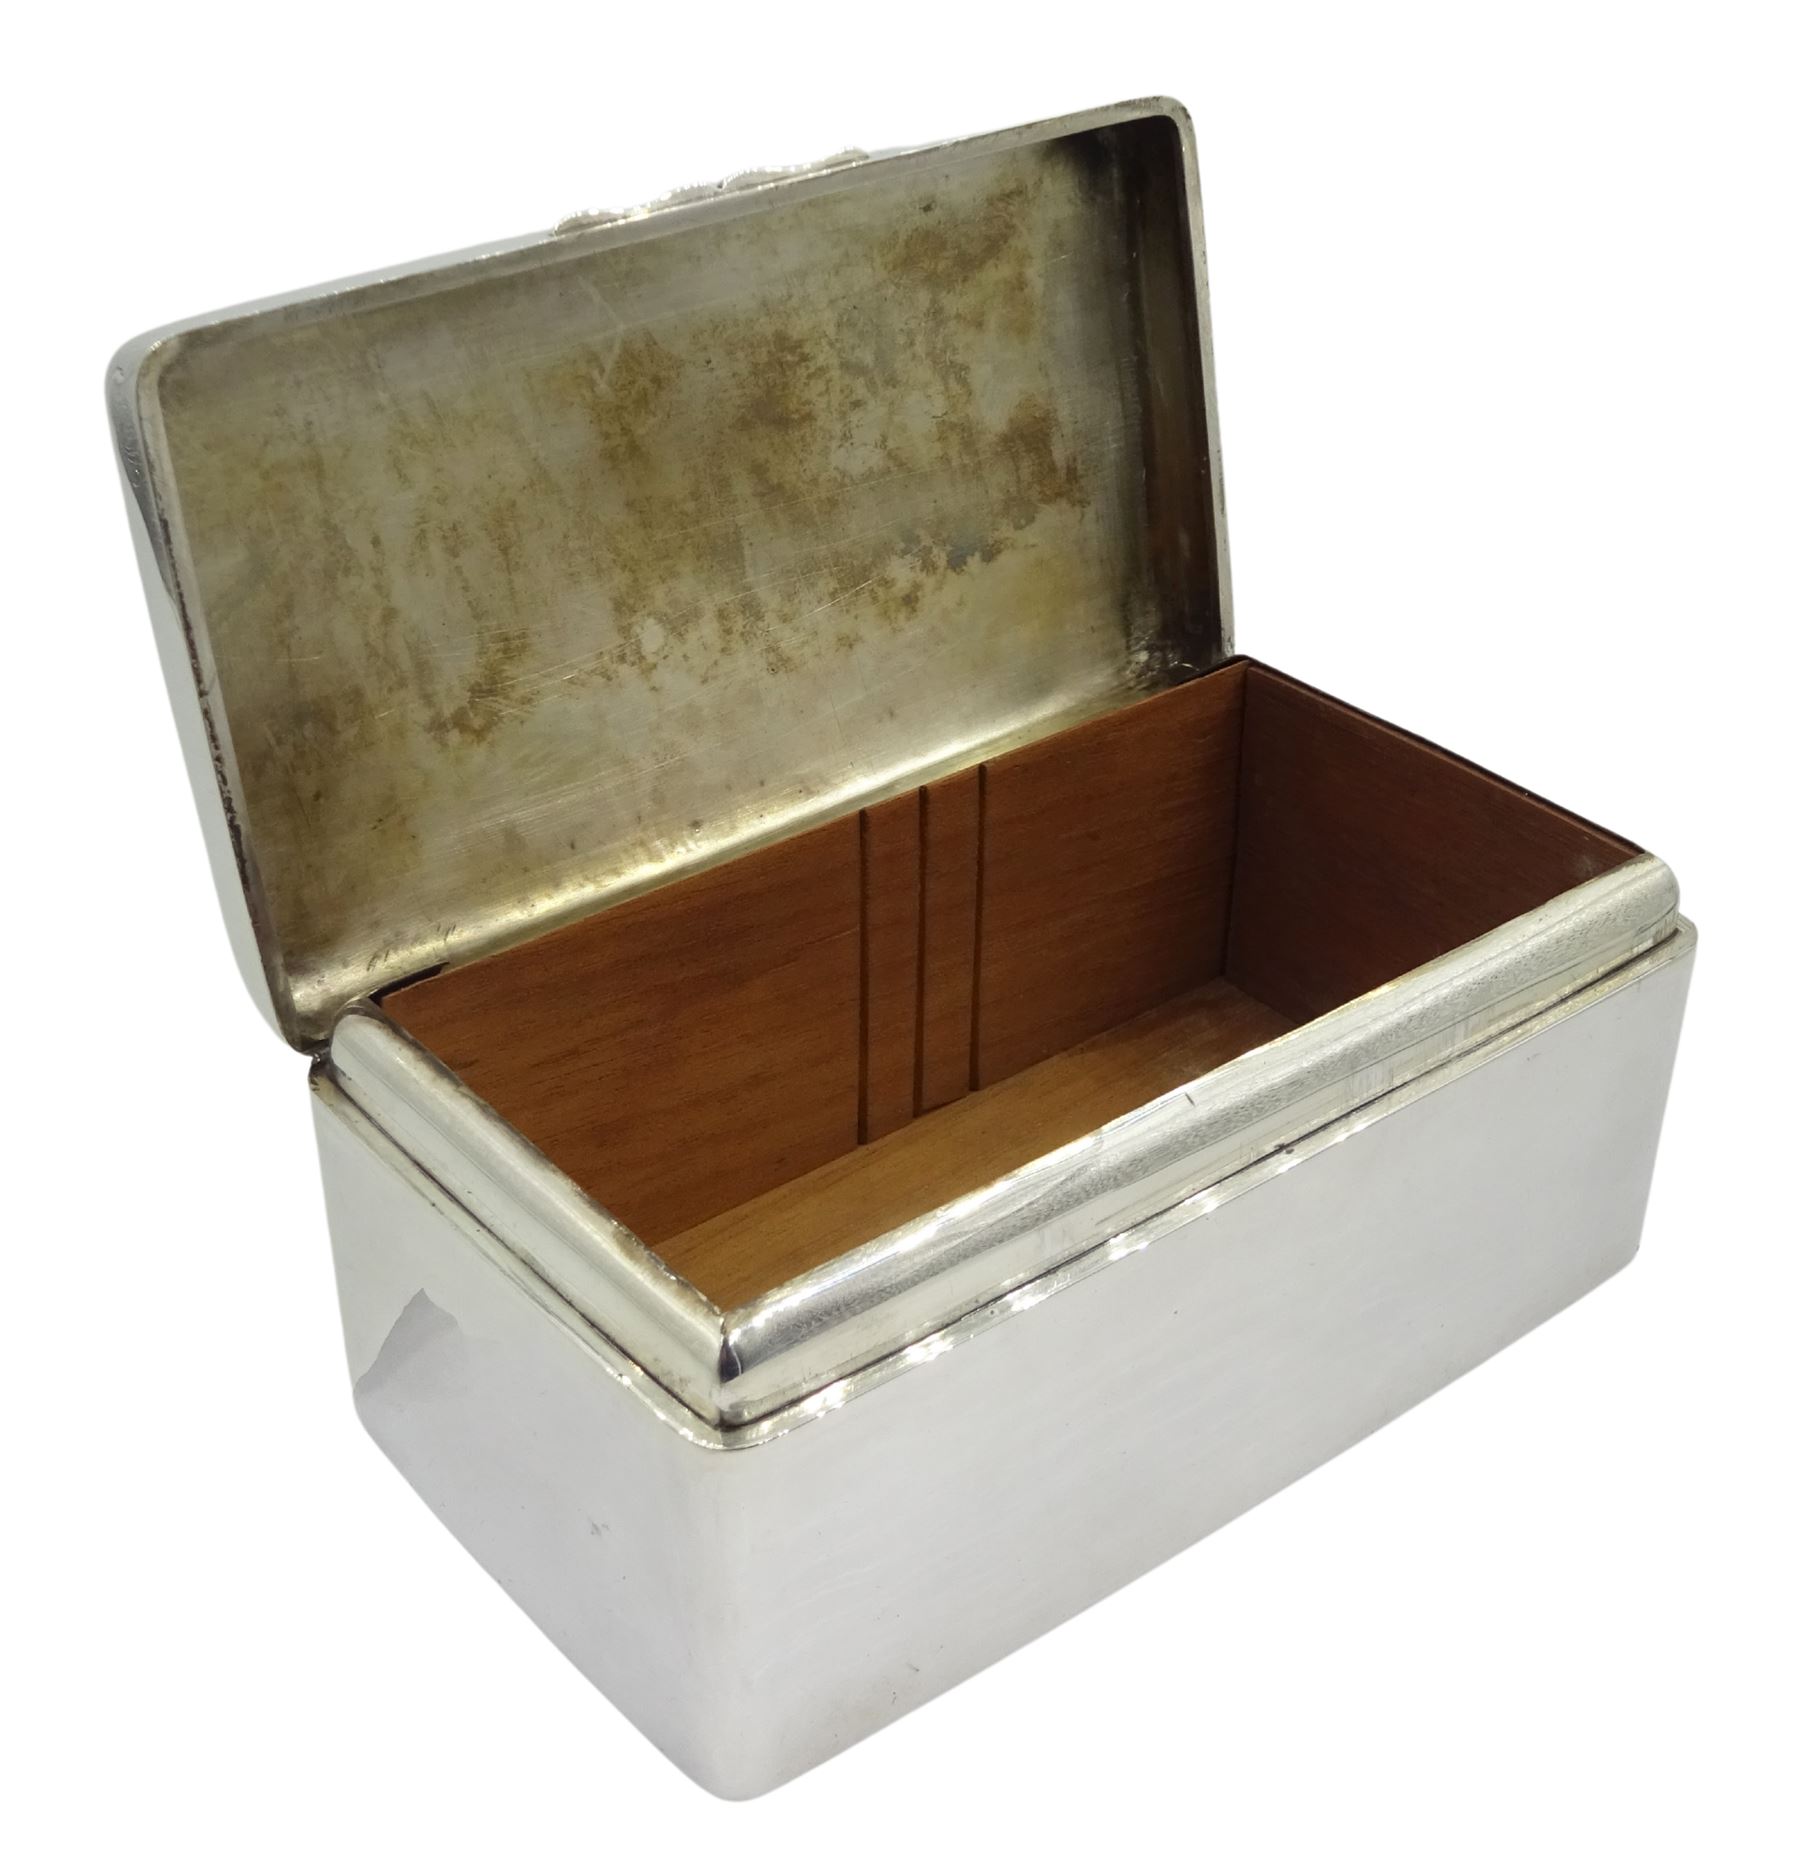 Early 20th century silver cigar box by Asprey & Co Ltd - Image 2 of 3